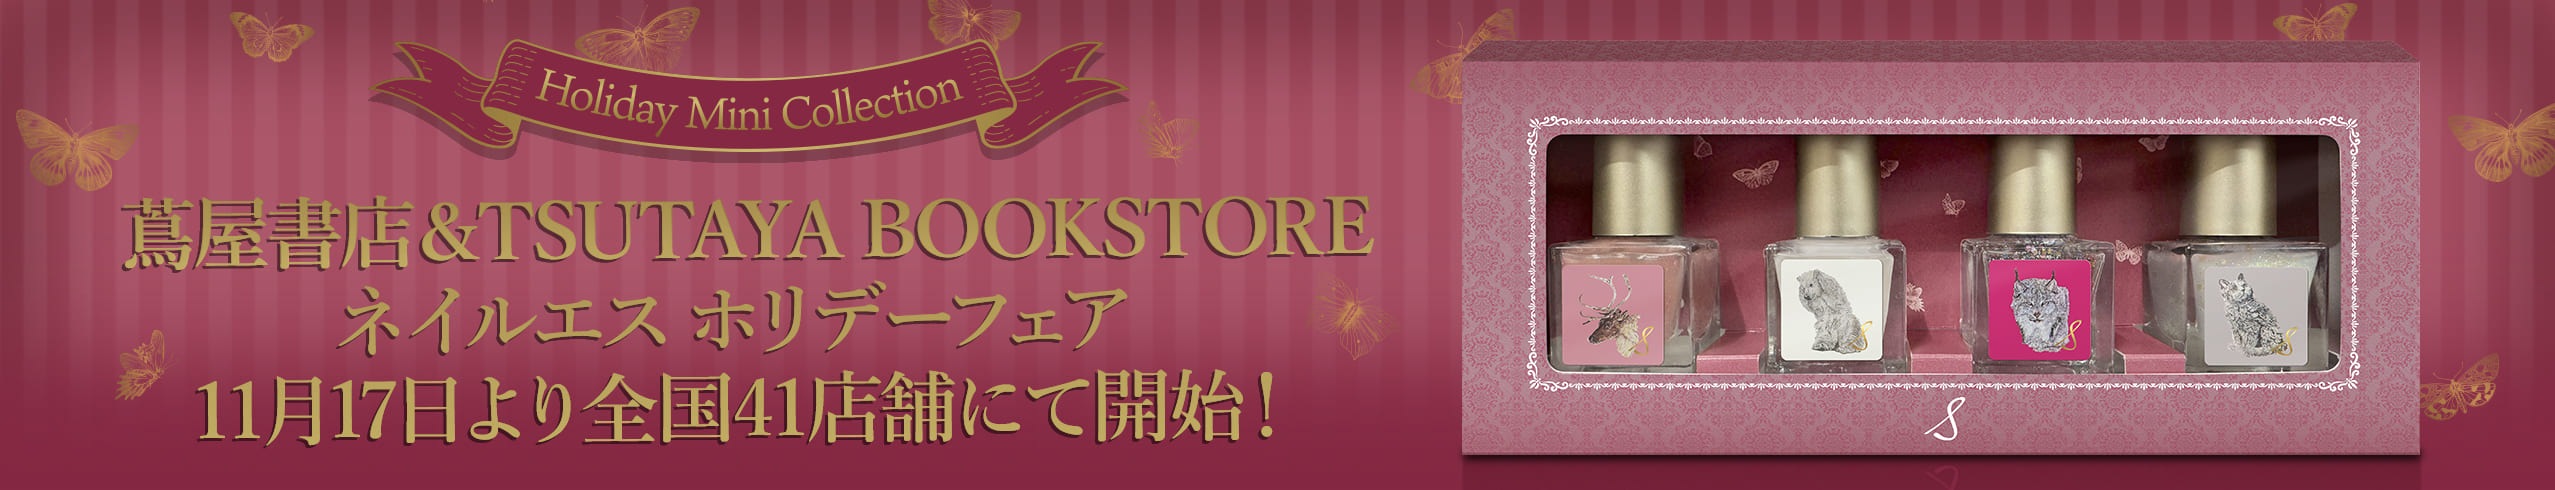 蔦屋書店&TSUTAYA BOOKSTORE
                    ネイルエスホリデーフェア11月17日より全国41店舗にて開始！